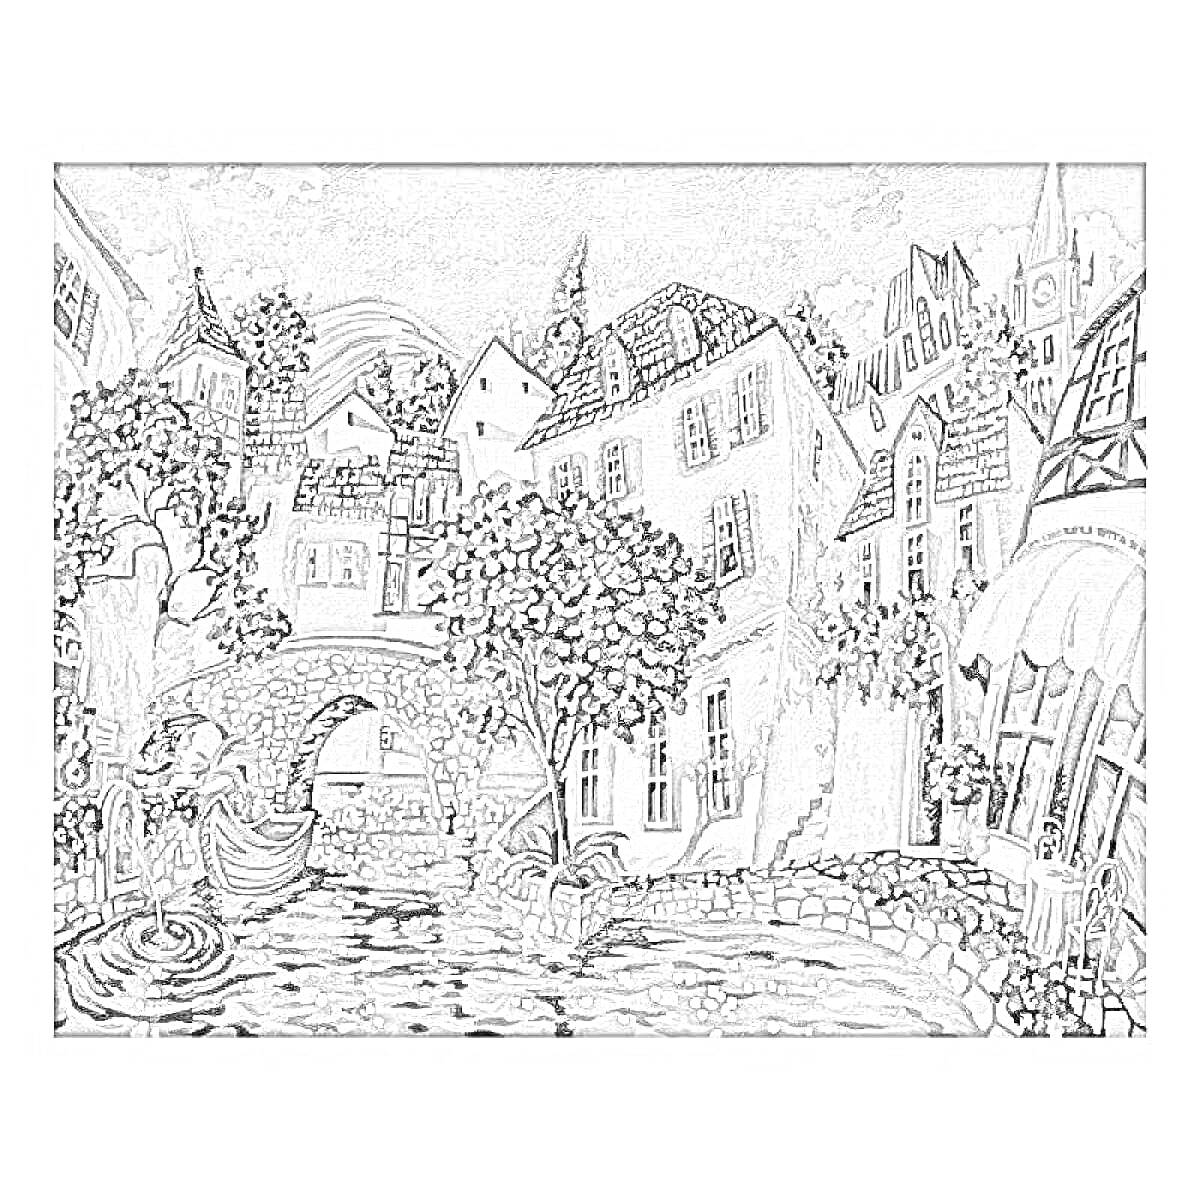 Раскраска Уютный европейский городок с кирпичной мостовой, лодкой на канале, зданиями с шатровыми крышами, каменным мостом и кафе с террасой.